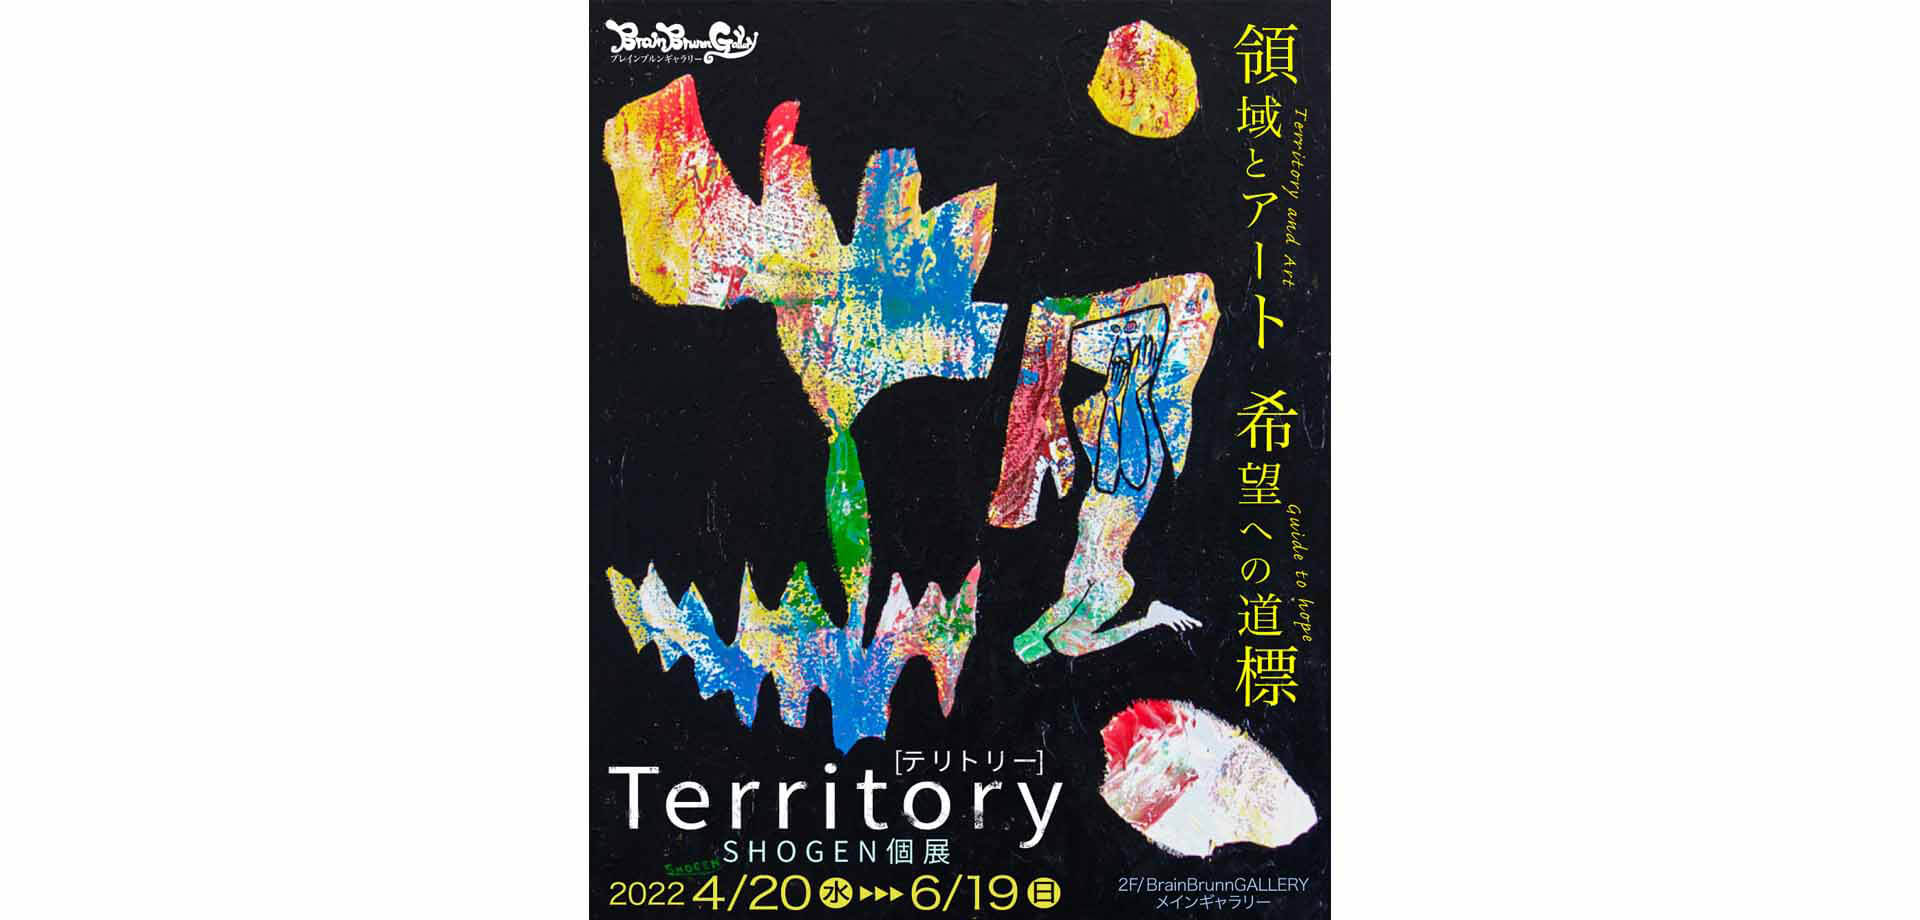 SHOGEN 個展「Territory 《テリトリー》」 企画アートギャラリー